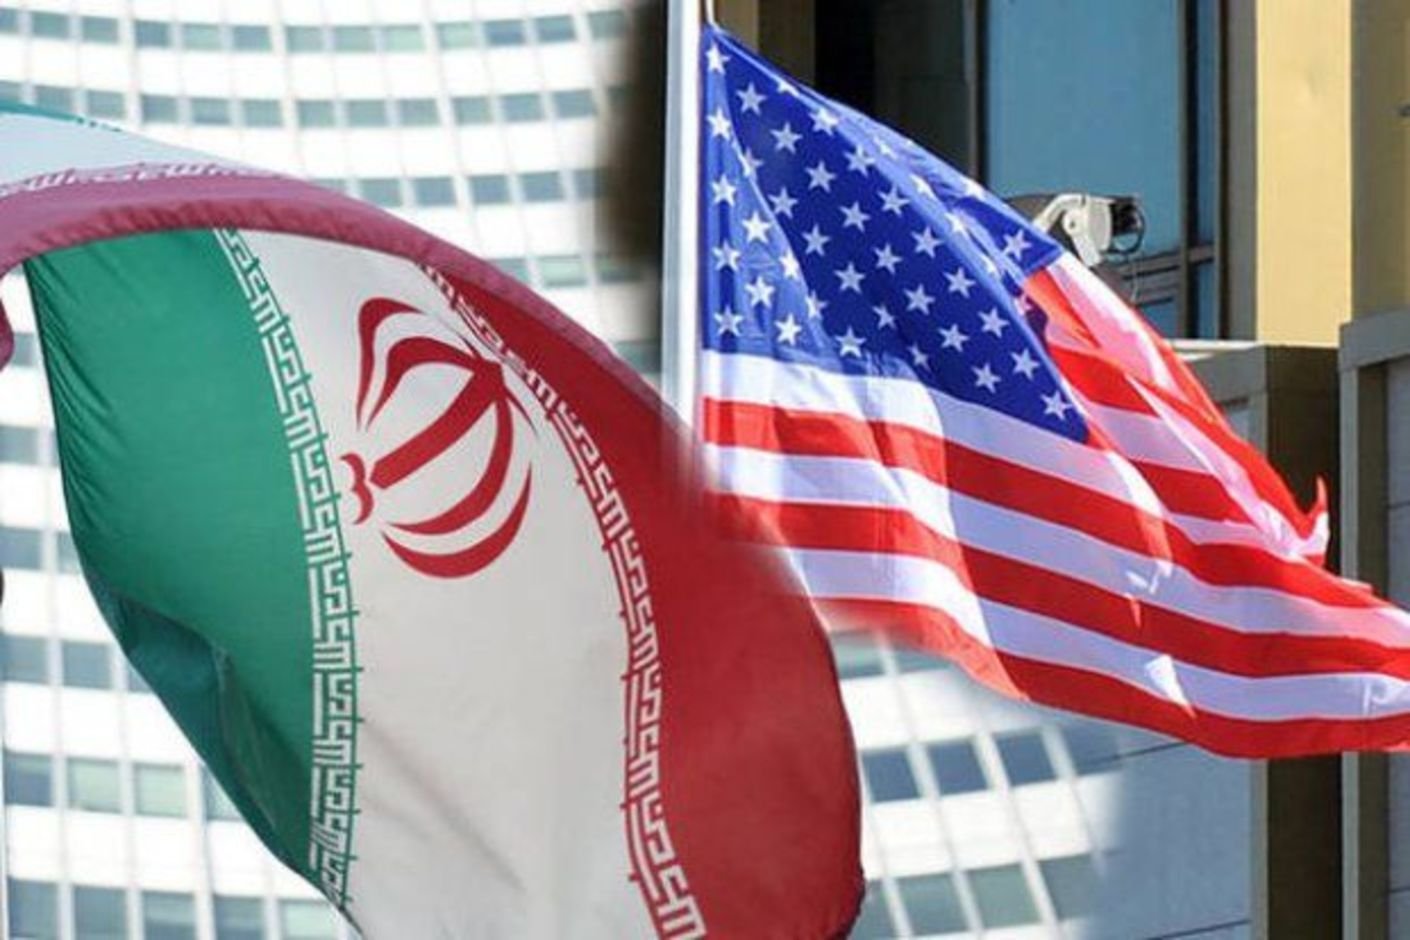 Anadolu Ajansı: Sinan OĞAN: “İran İlk Kez Olası Bir Saldırıyı Ensesinde Hissediyor” 